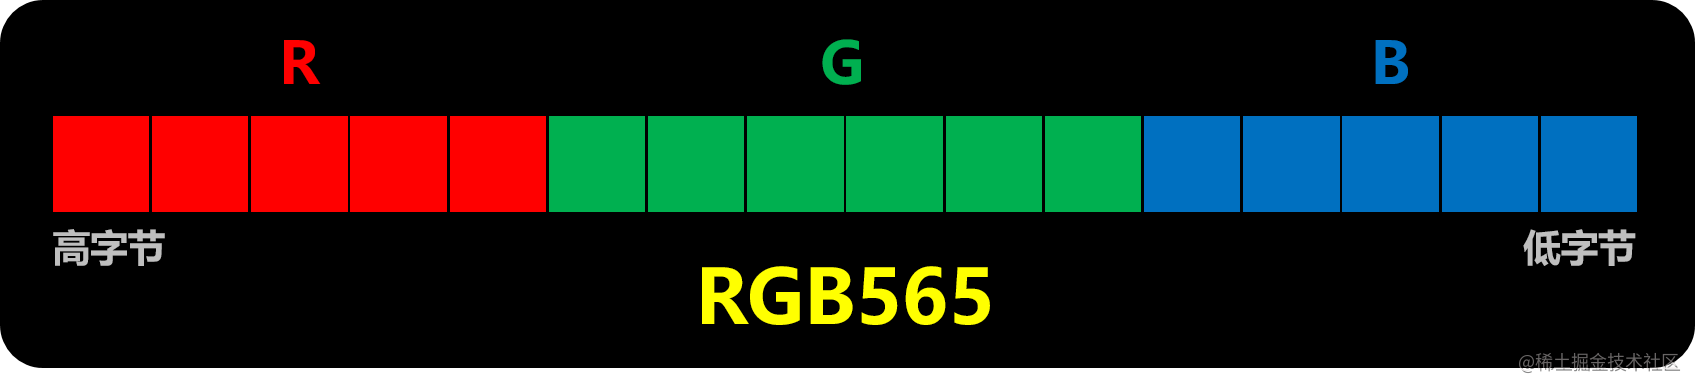 RGB565